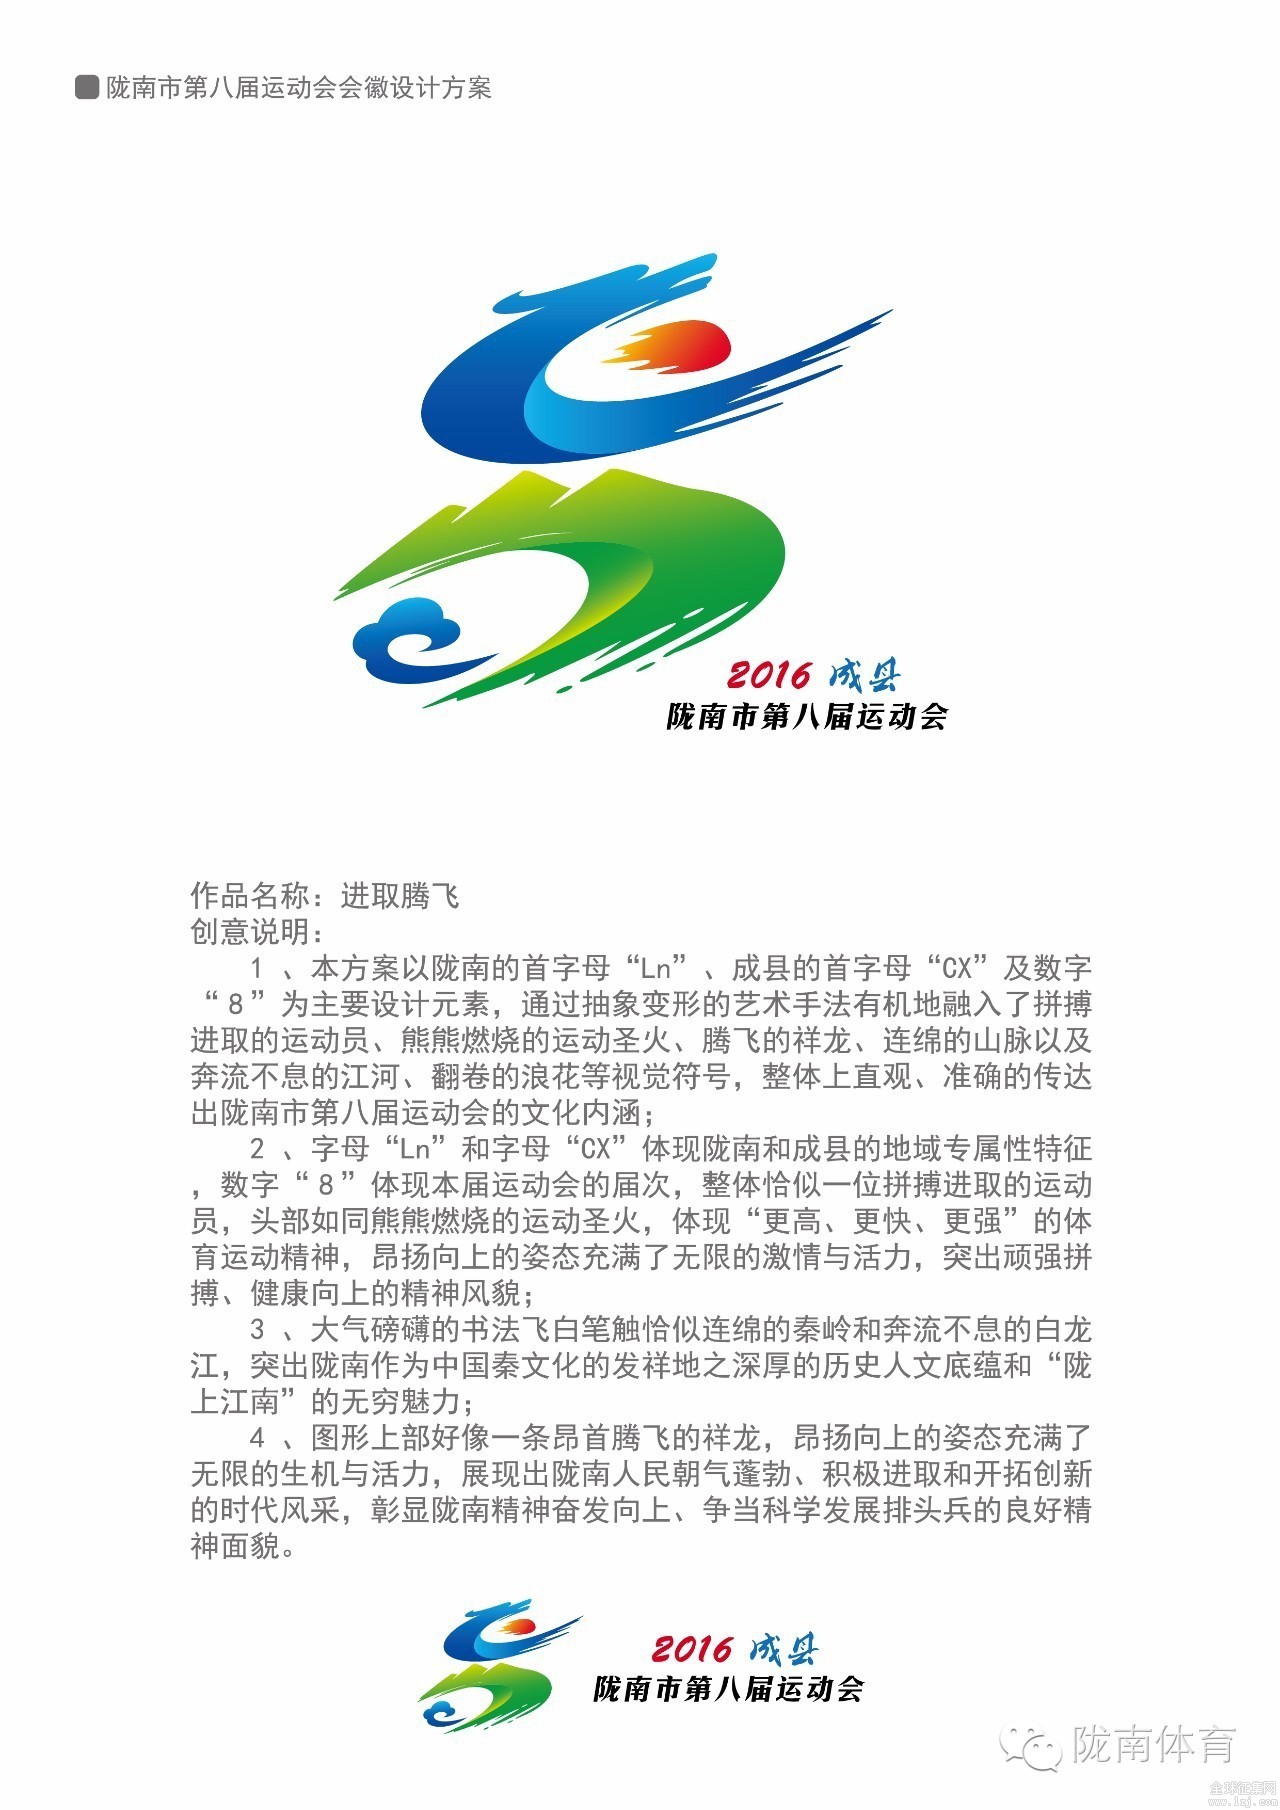 陇南市第八届运动会会徽吉祥物征集确定并启用